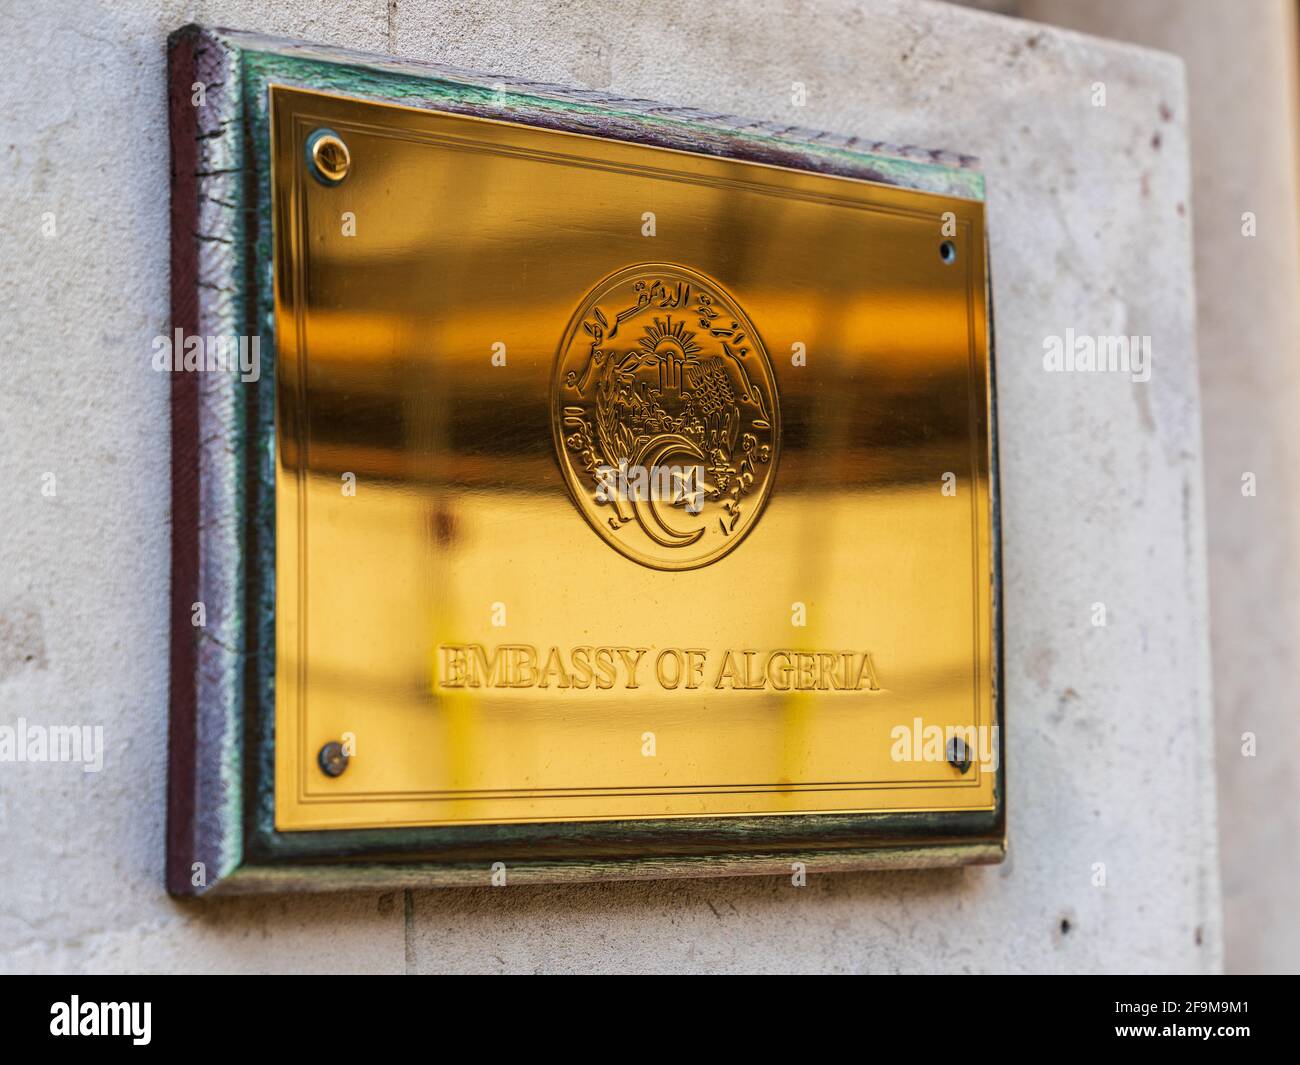 Ambassade d'Algérie Londres - Brass panneau sur l'ambassade d'Algérie à Riding House St, Marylebone, Londres UK. Banque D'Images